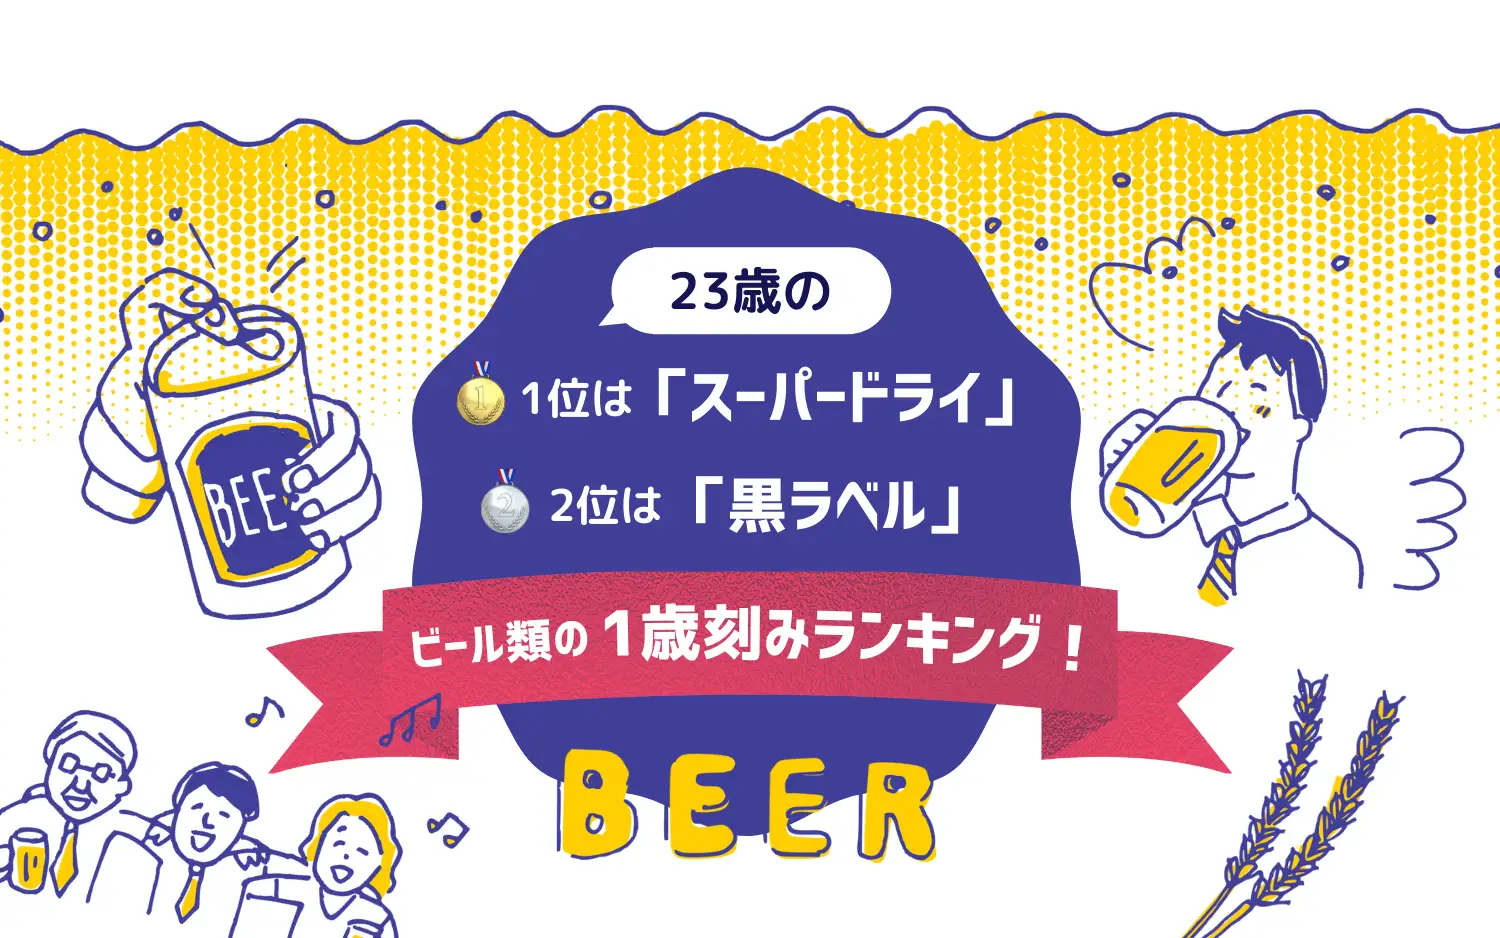 30 bières les plus populaires Japon